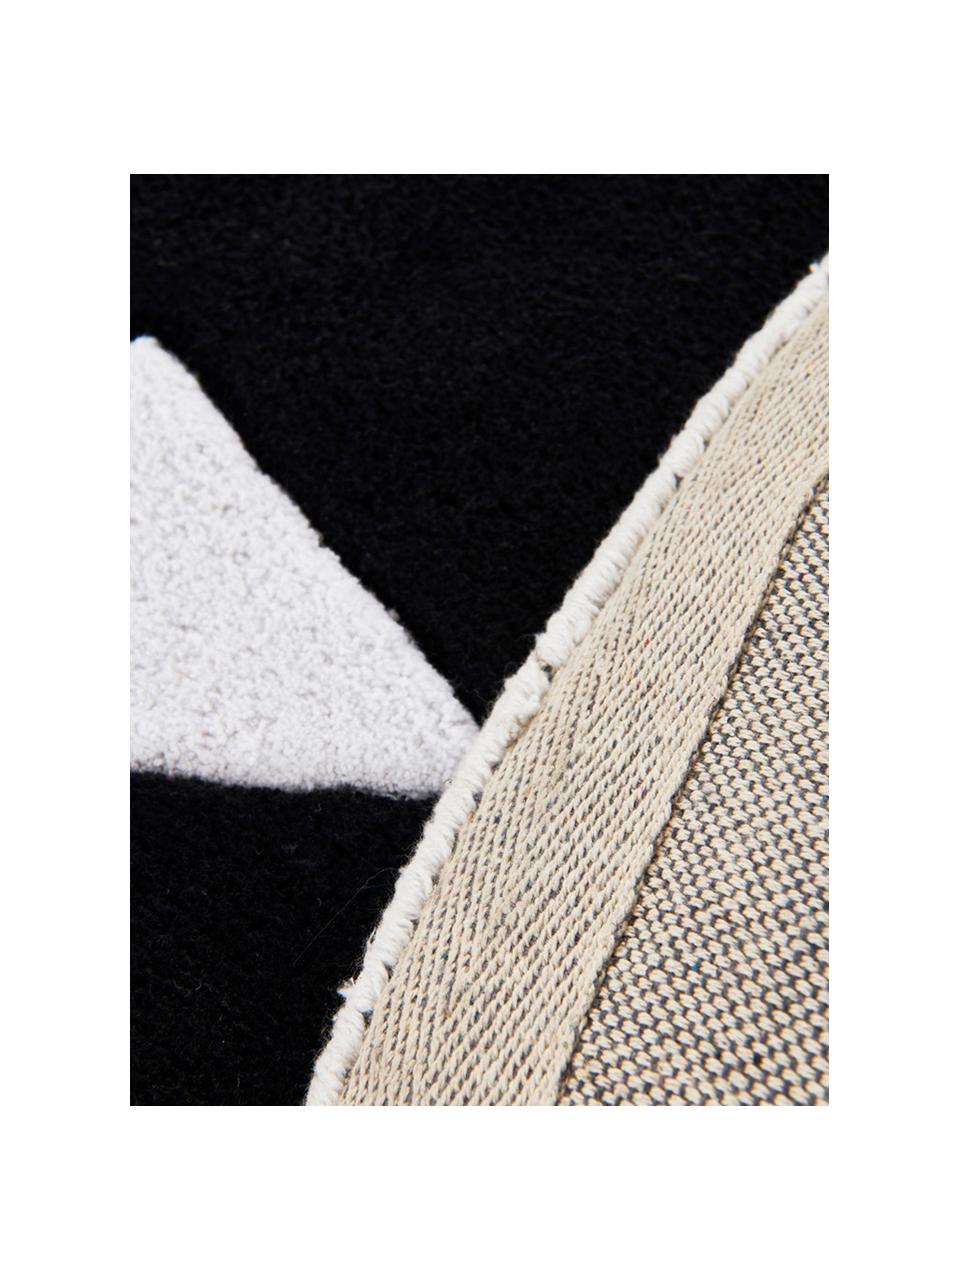 Teppich El Gato, 100% Baumwolle, 1200 g/m², Weiß, Ø 120 cm (Größe S)